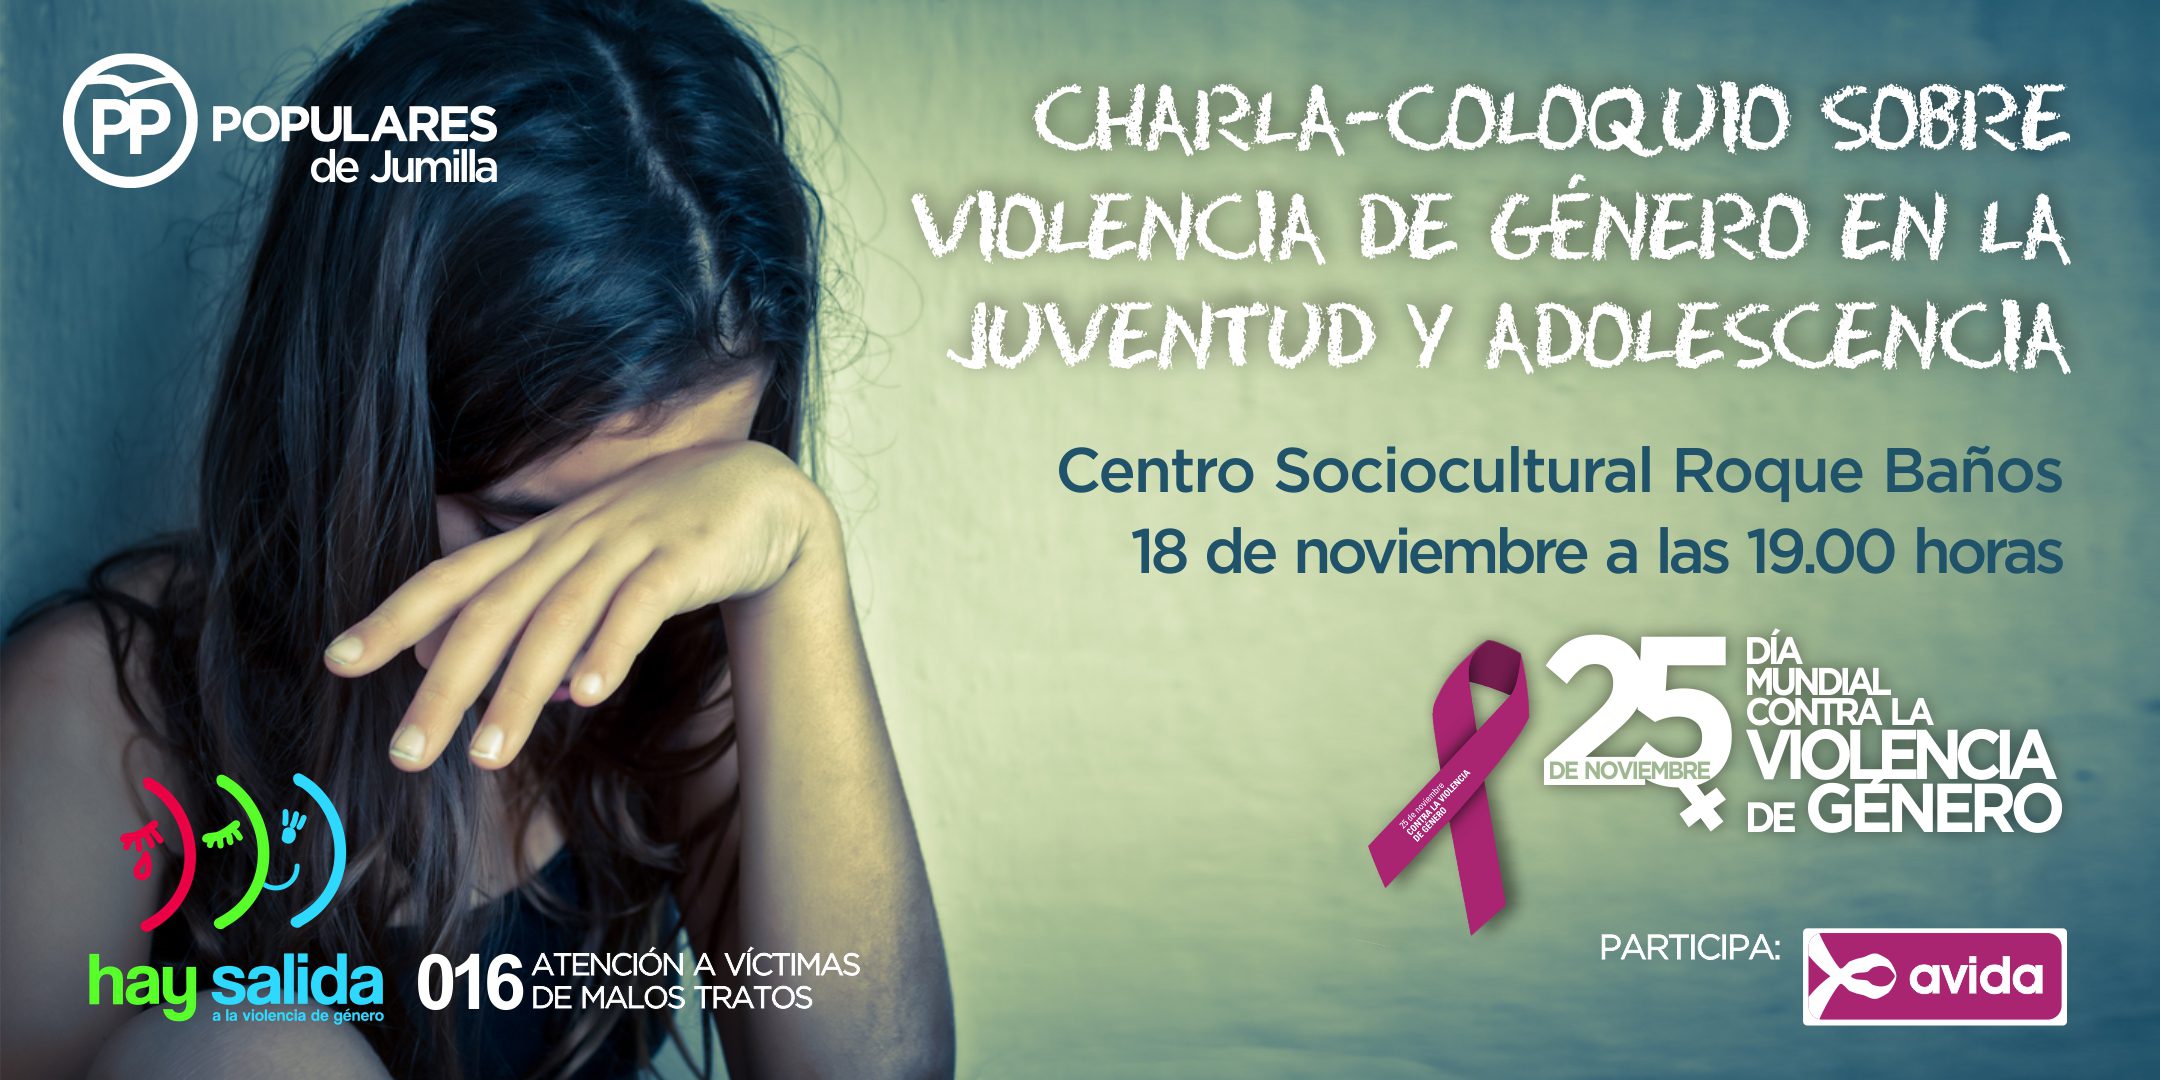 Mañana va a tener lugar una charla sobre violencia de género en la adolescencia